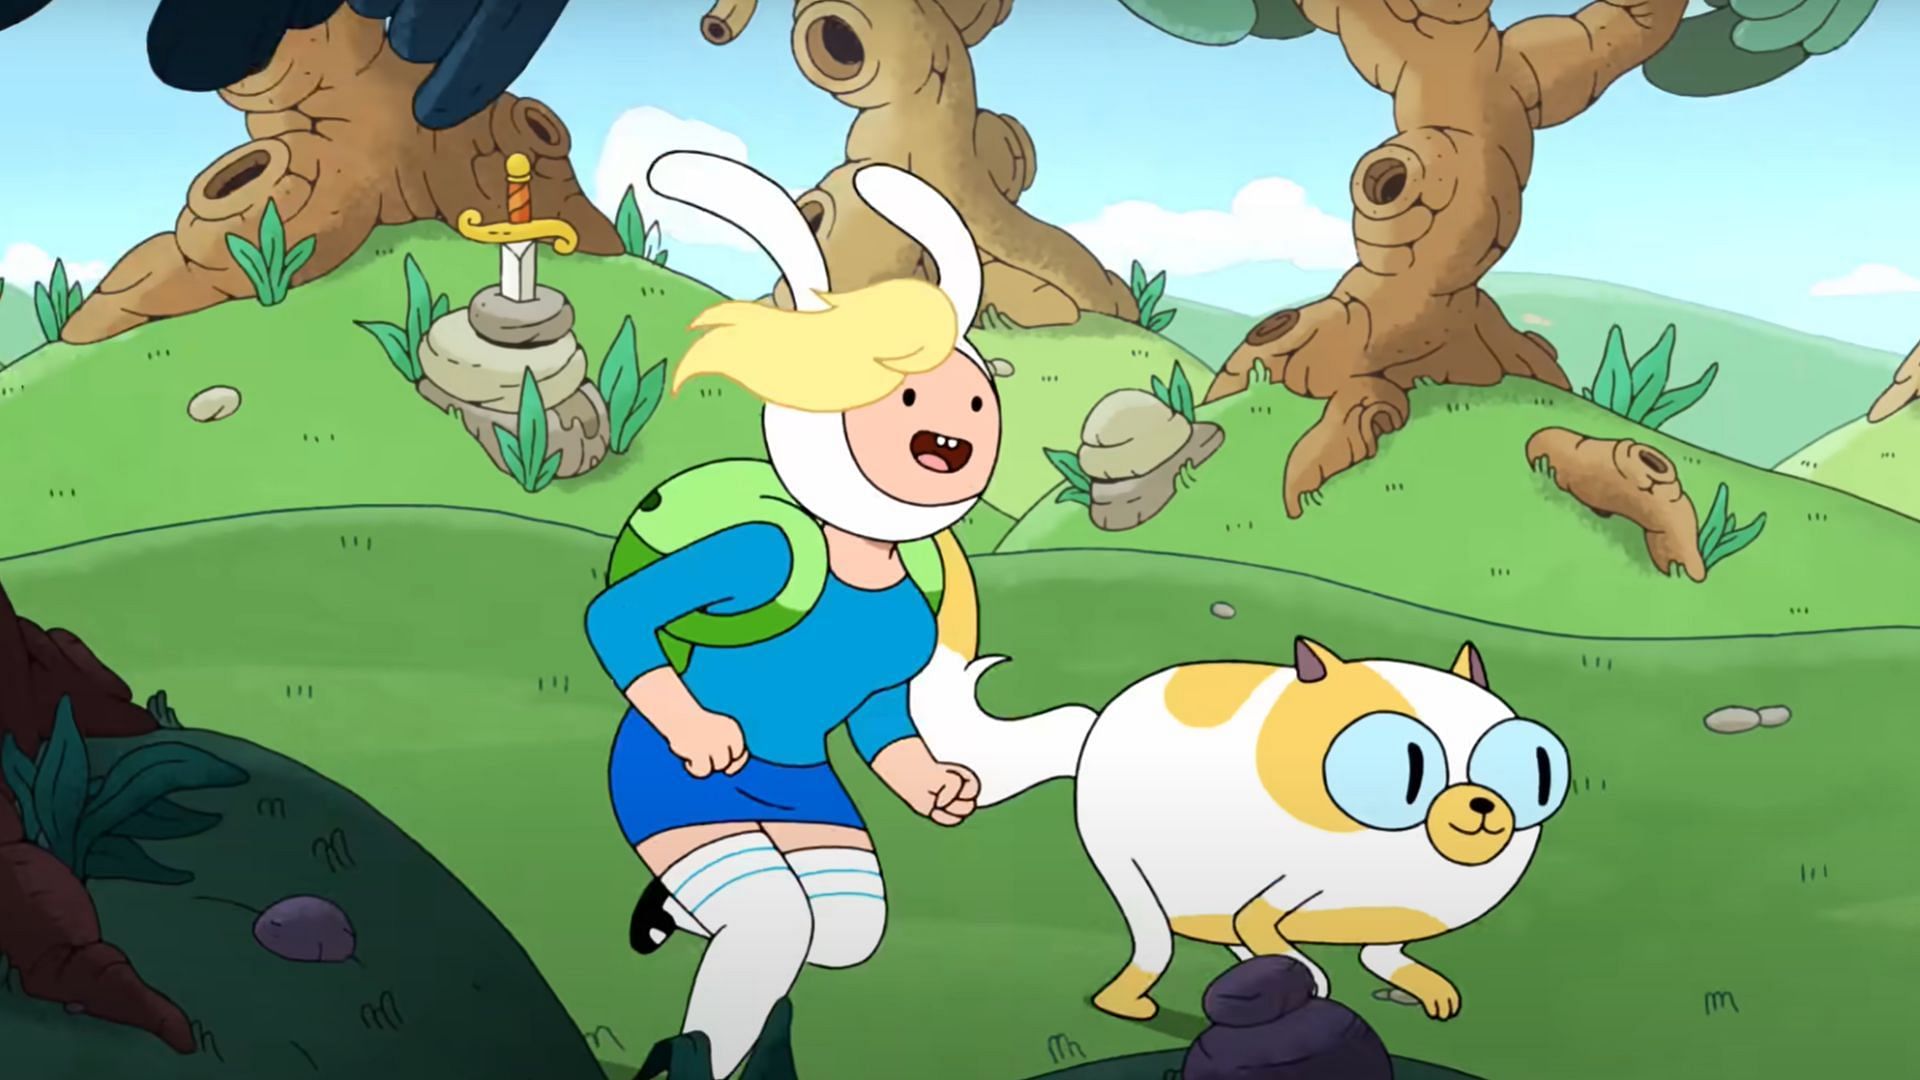 hora de aventura fionna y cake - Pesquisa Google  Adventure time cartoon,  Adventure time anime, Adventure time